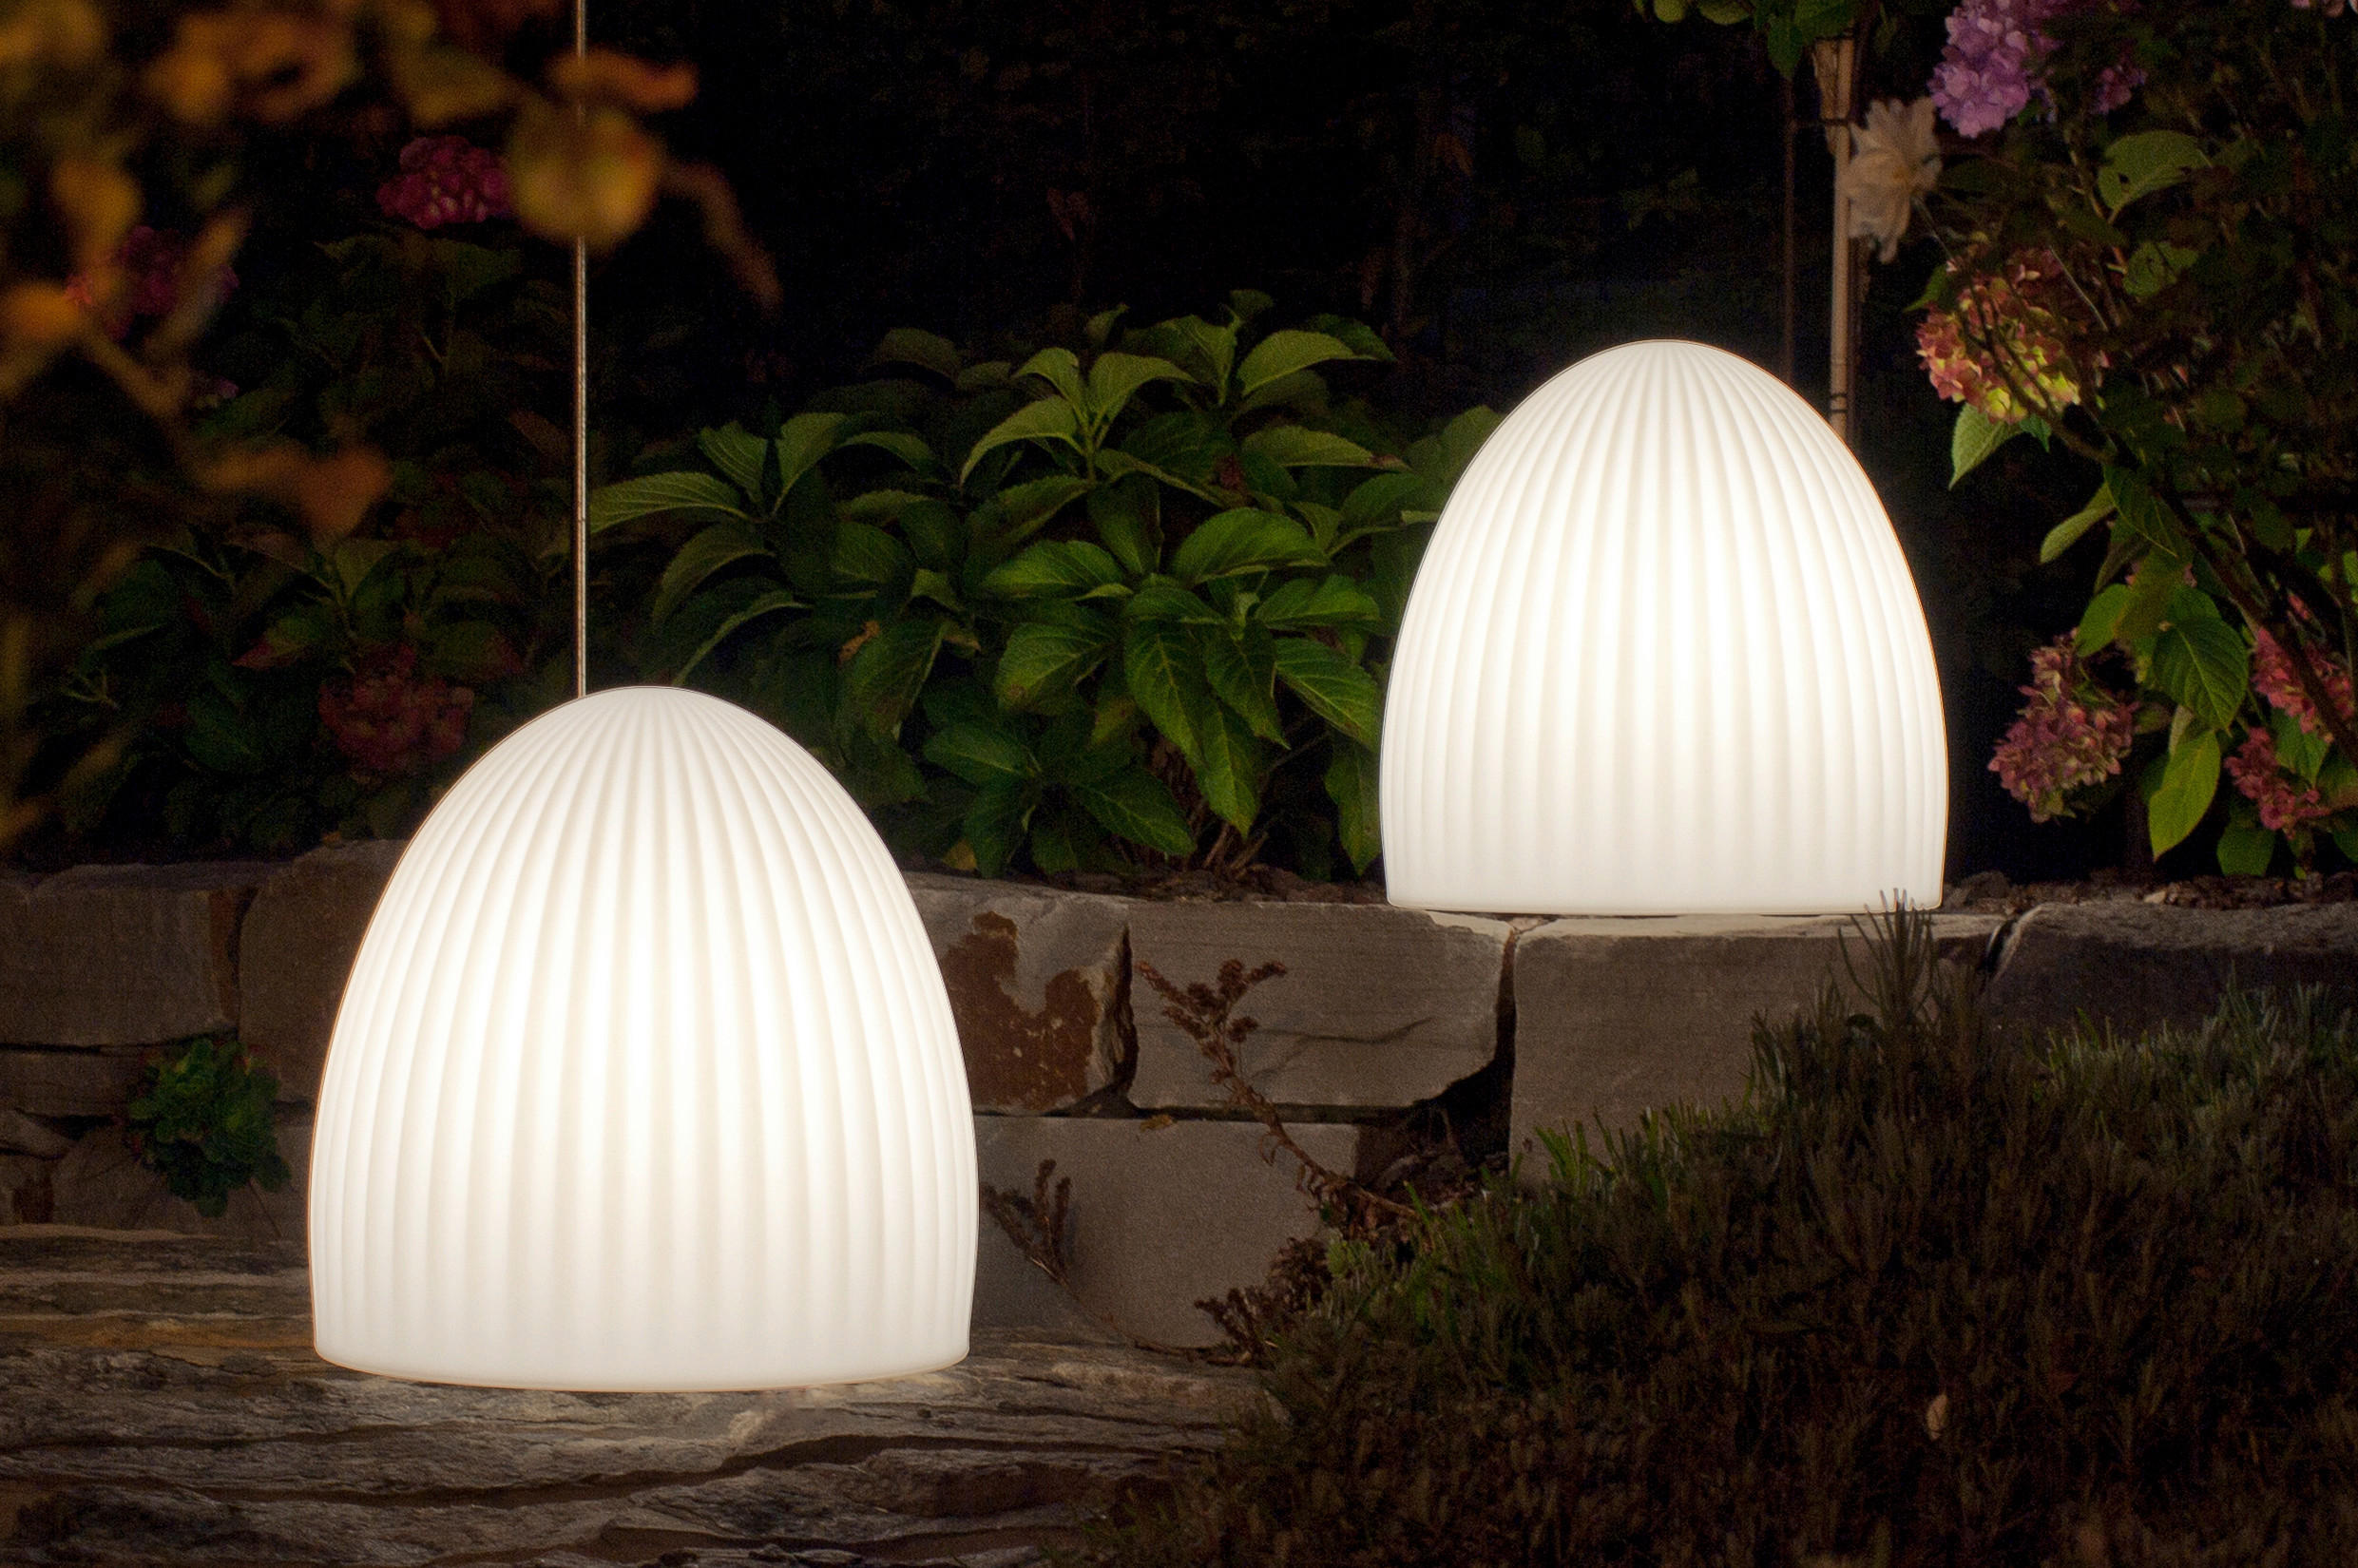 LED-LAMPA 37/39 cm   - vit, Basics, plast (37/39cm) - Ambia Home